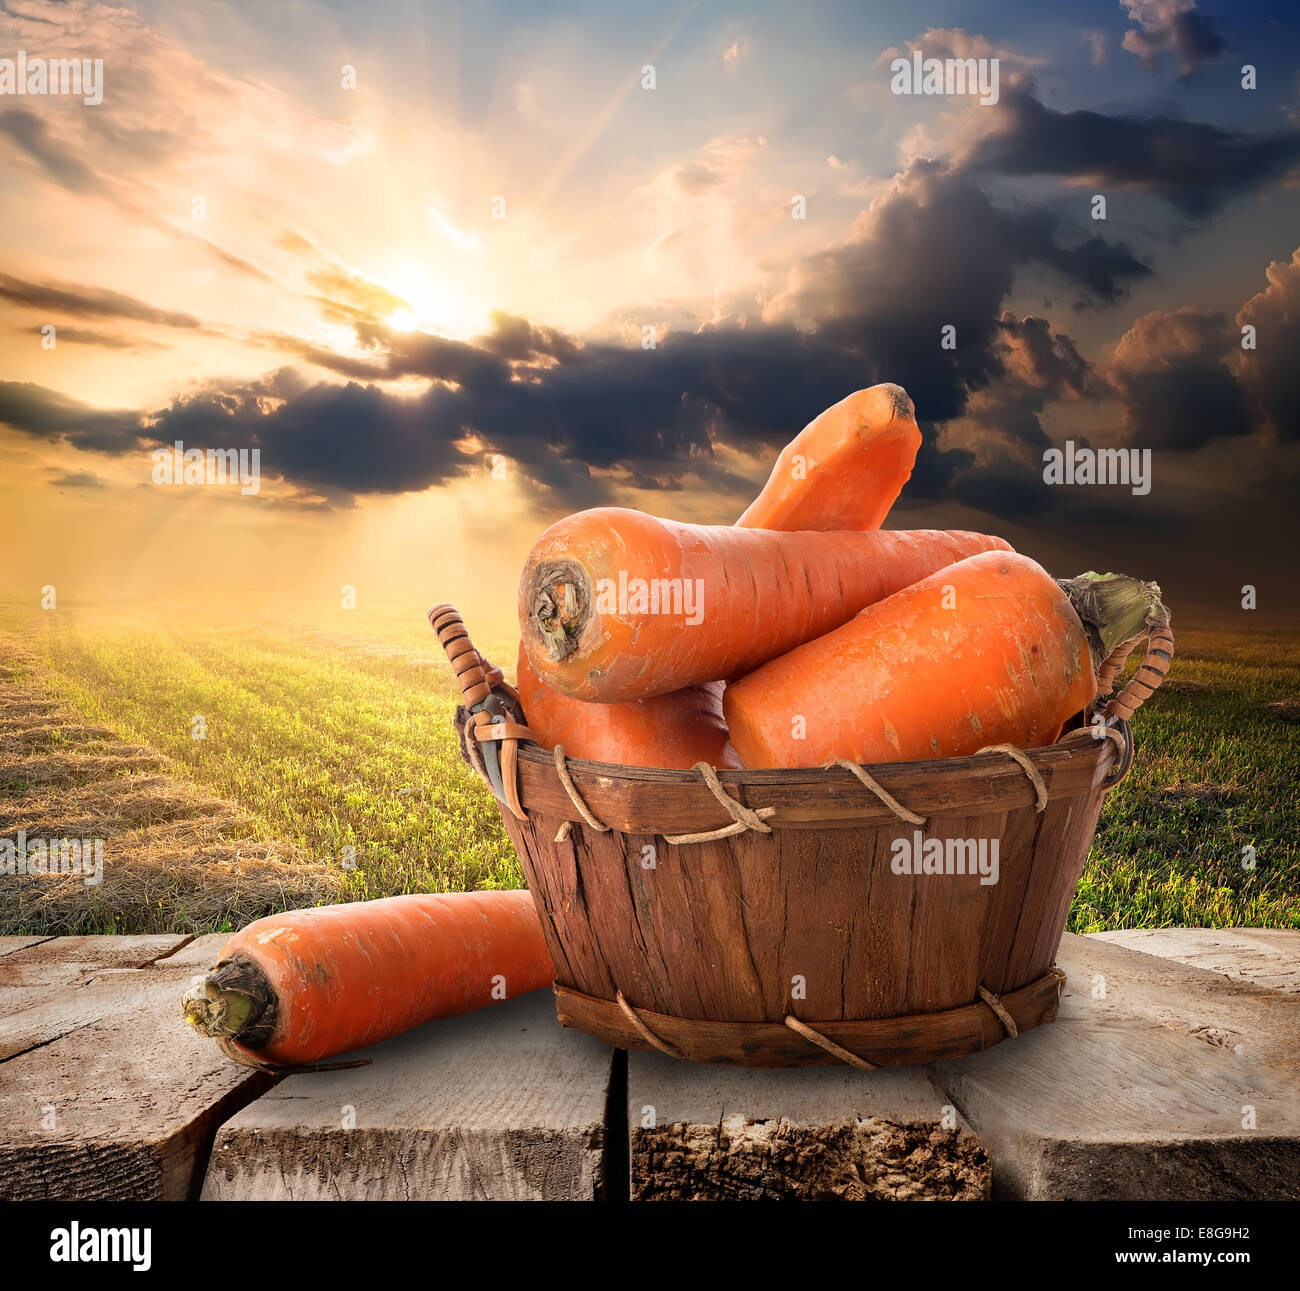 Karotte in einem Korb auf Tisch und Landschaft Stockfoto